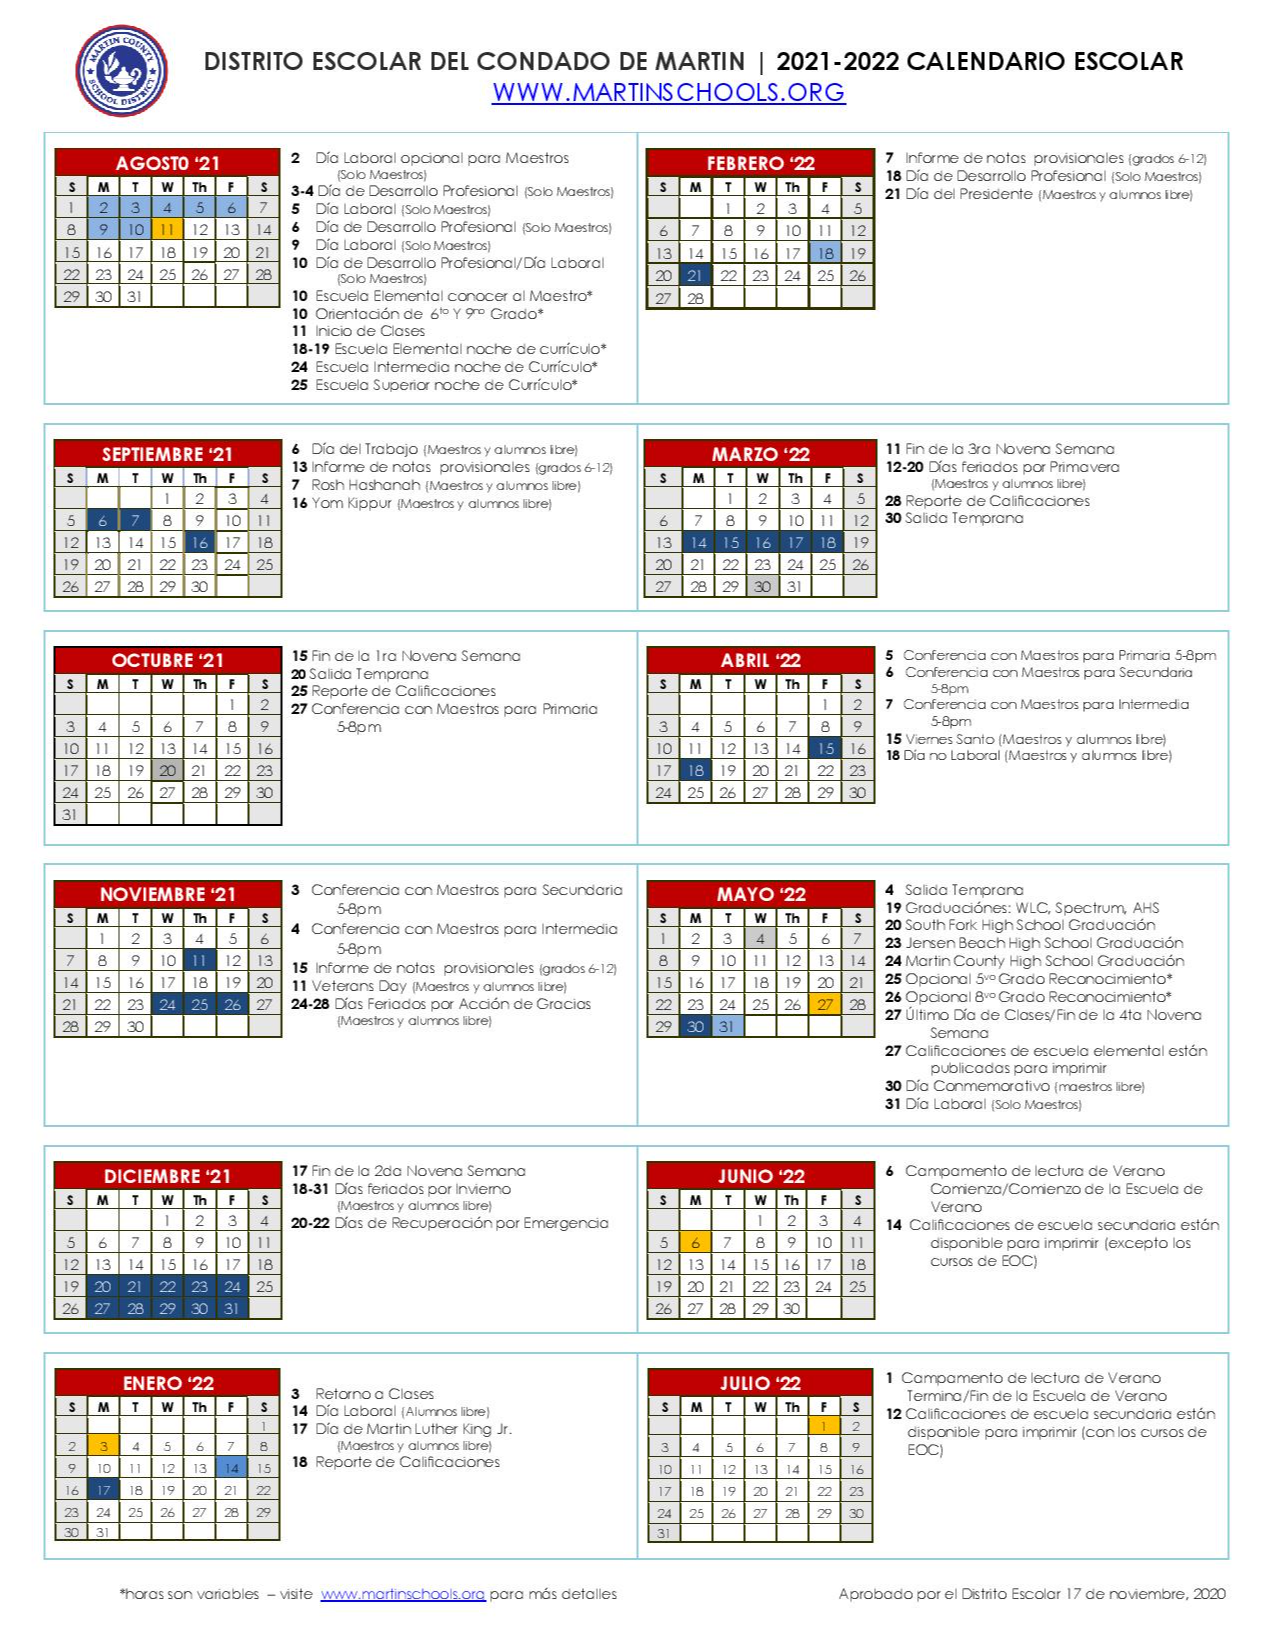 2021-2022 Calendario Escolar